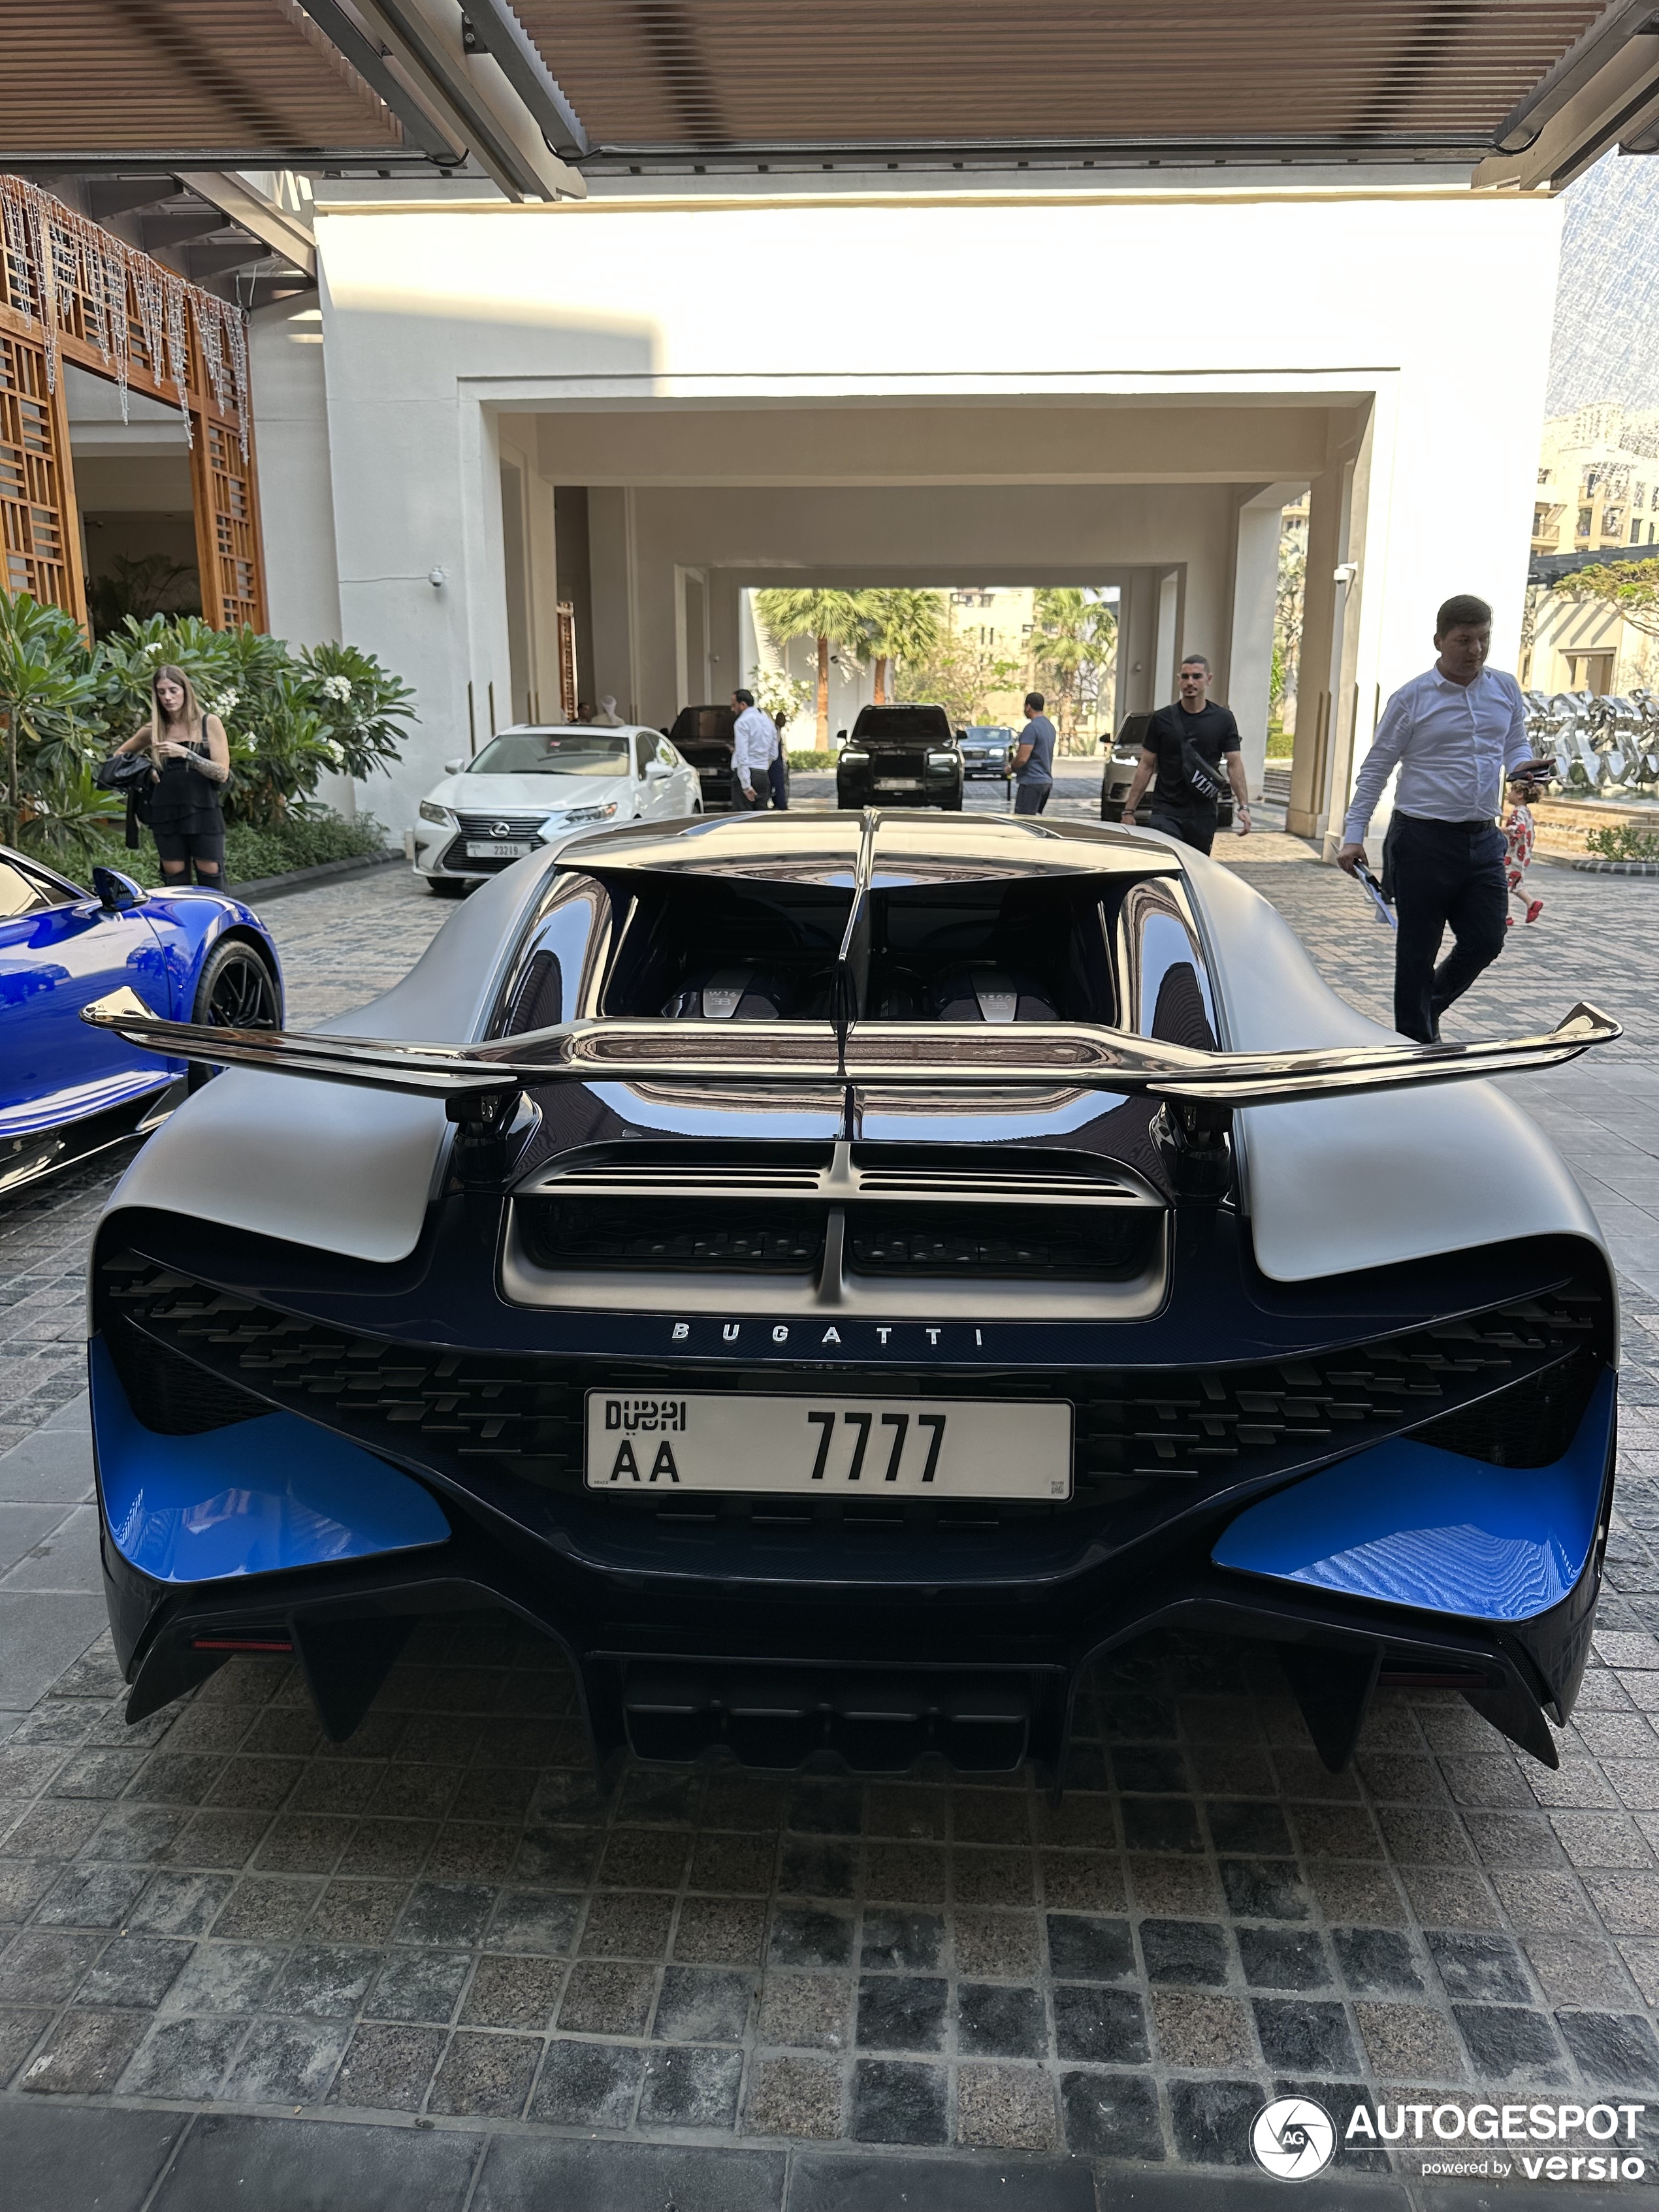 A new specimen of the Bugatti Divo